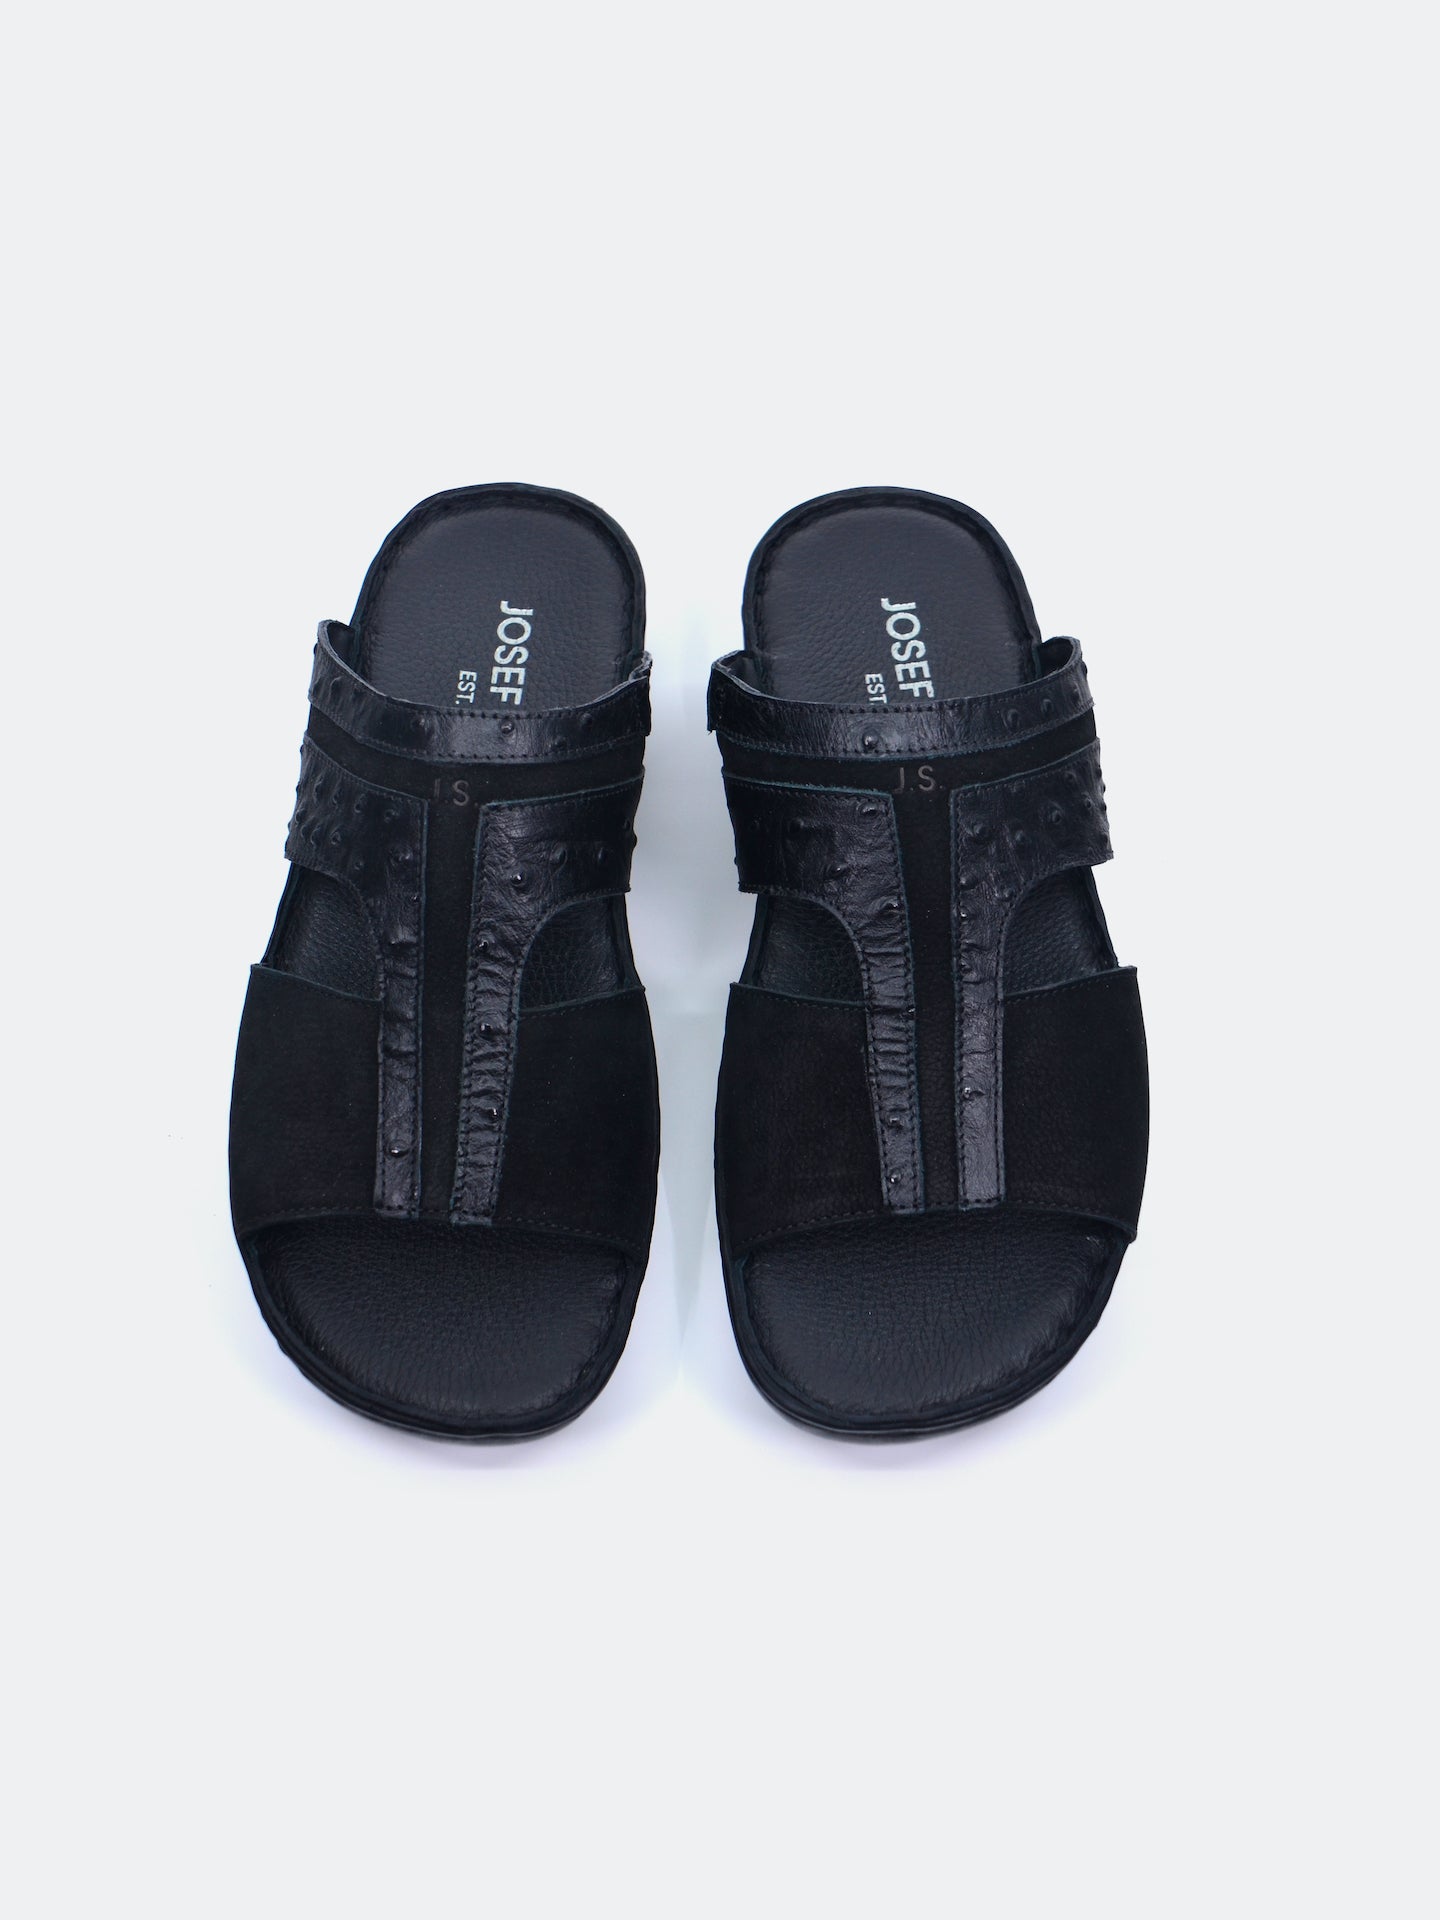 Josef Seibel Men's Slider Sandals #color_Black